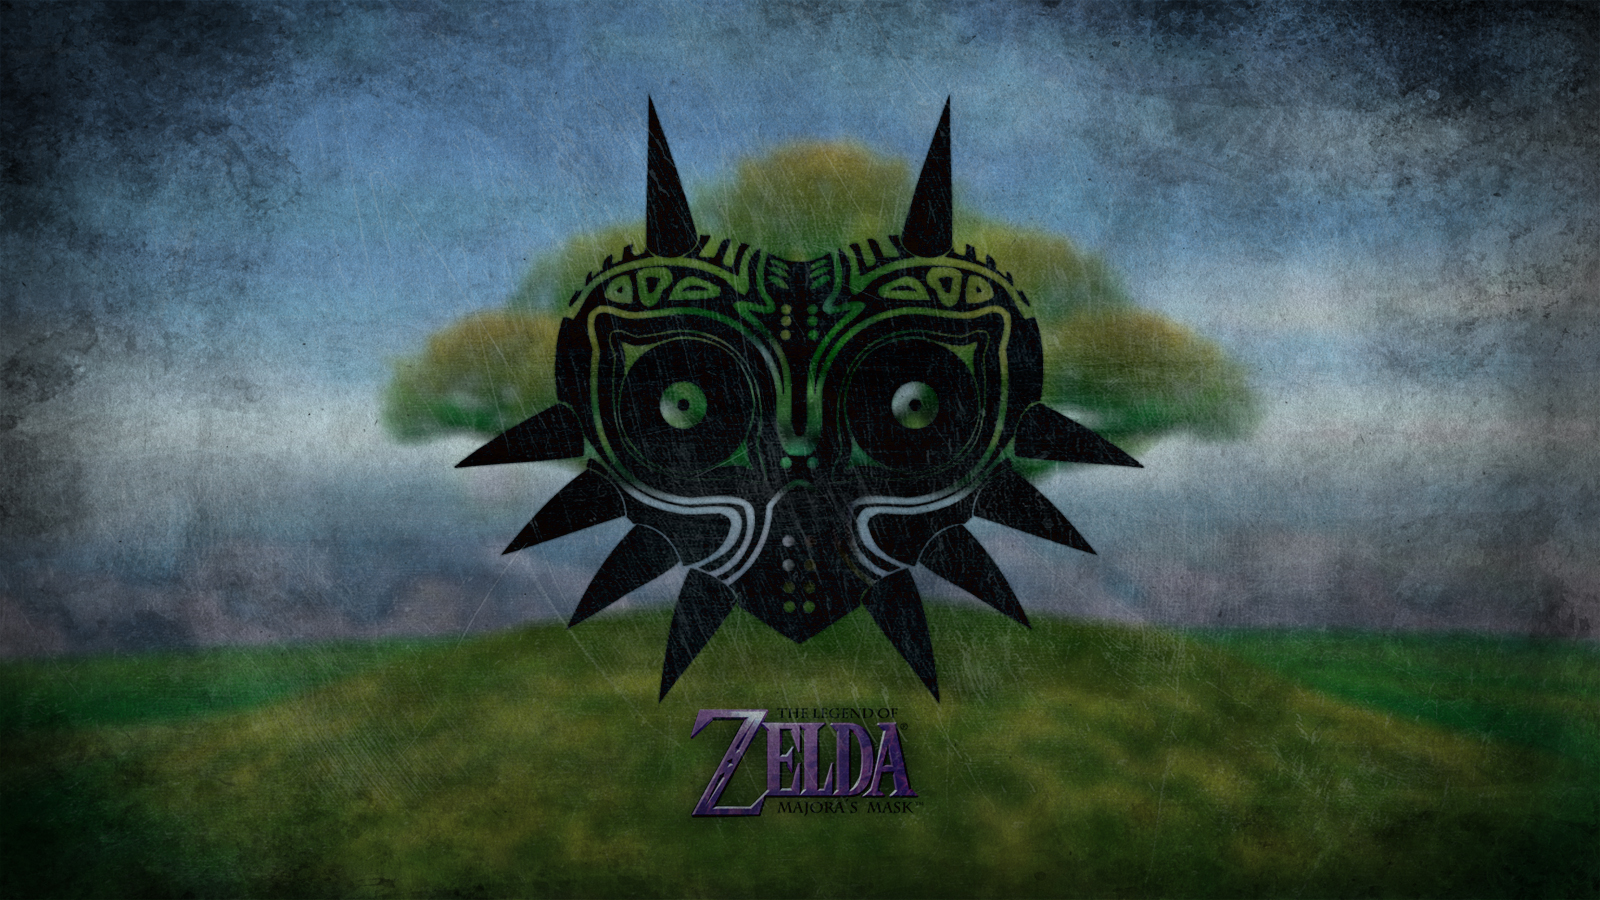 Video Game The Legend Of Zelda Majoras Mask 1600x900